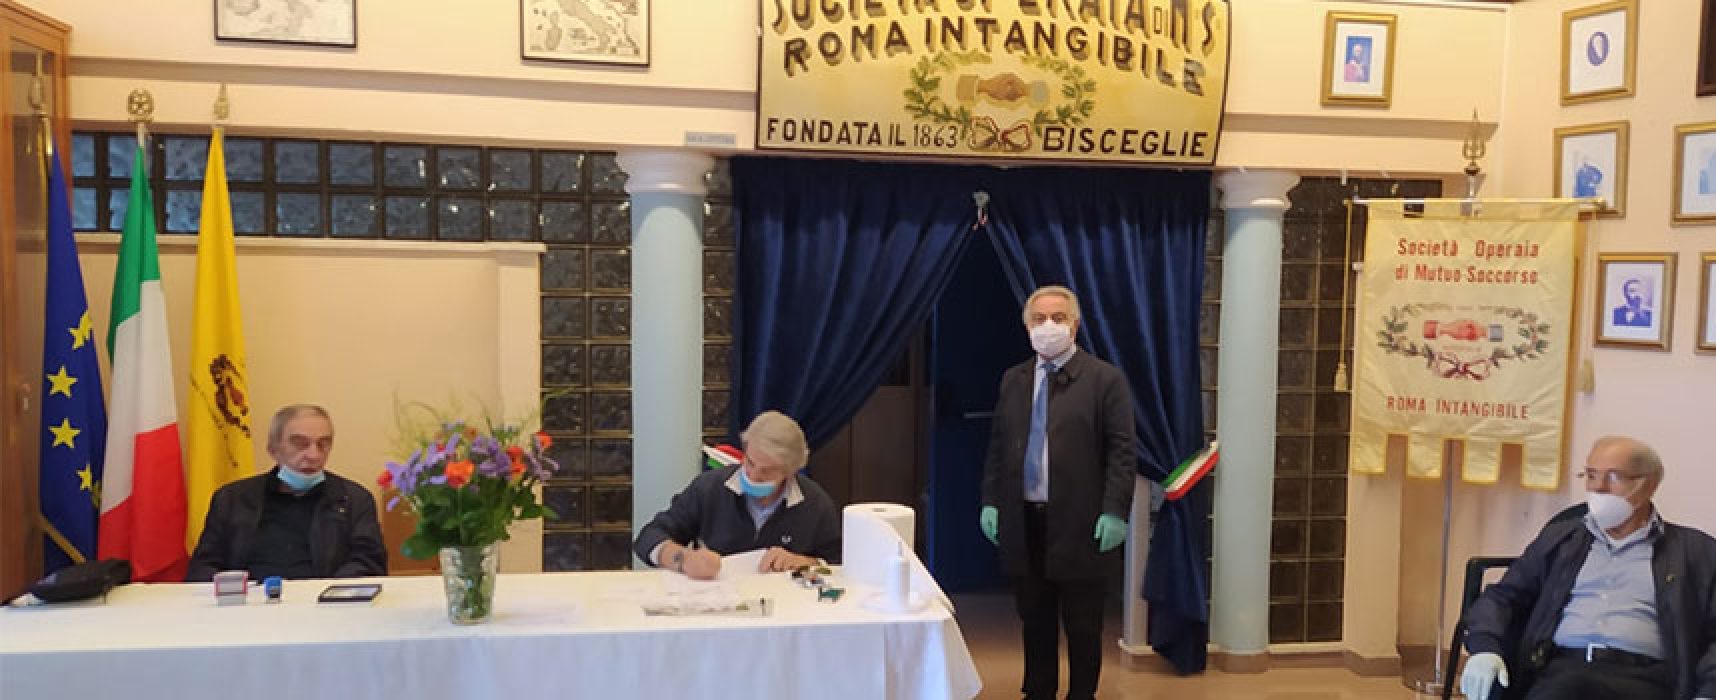 Roma Intangibile: esito negativo per gli oltre 200 test sierologici effettuati